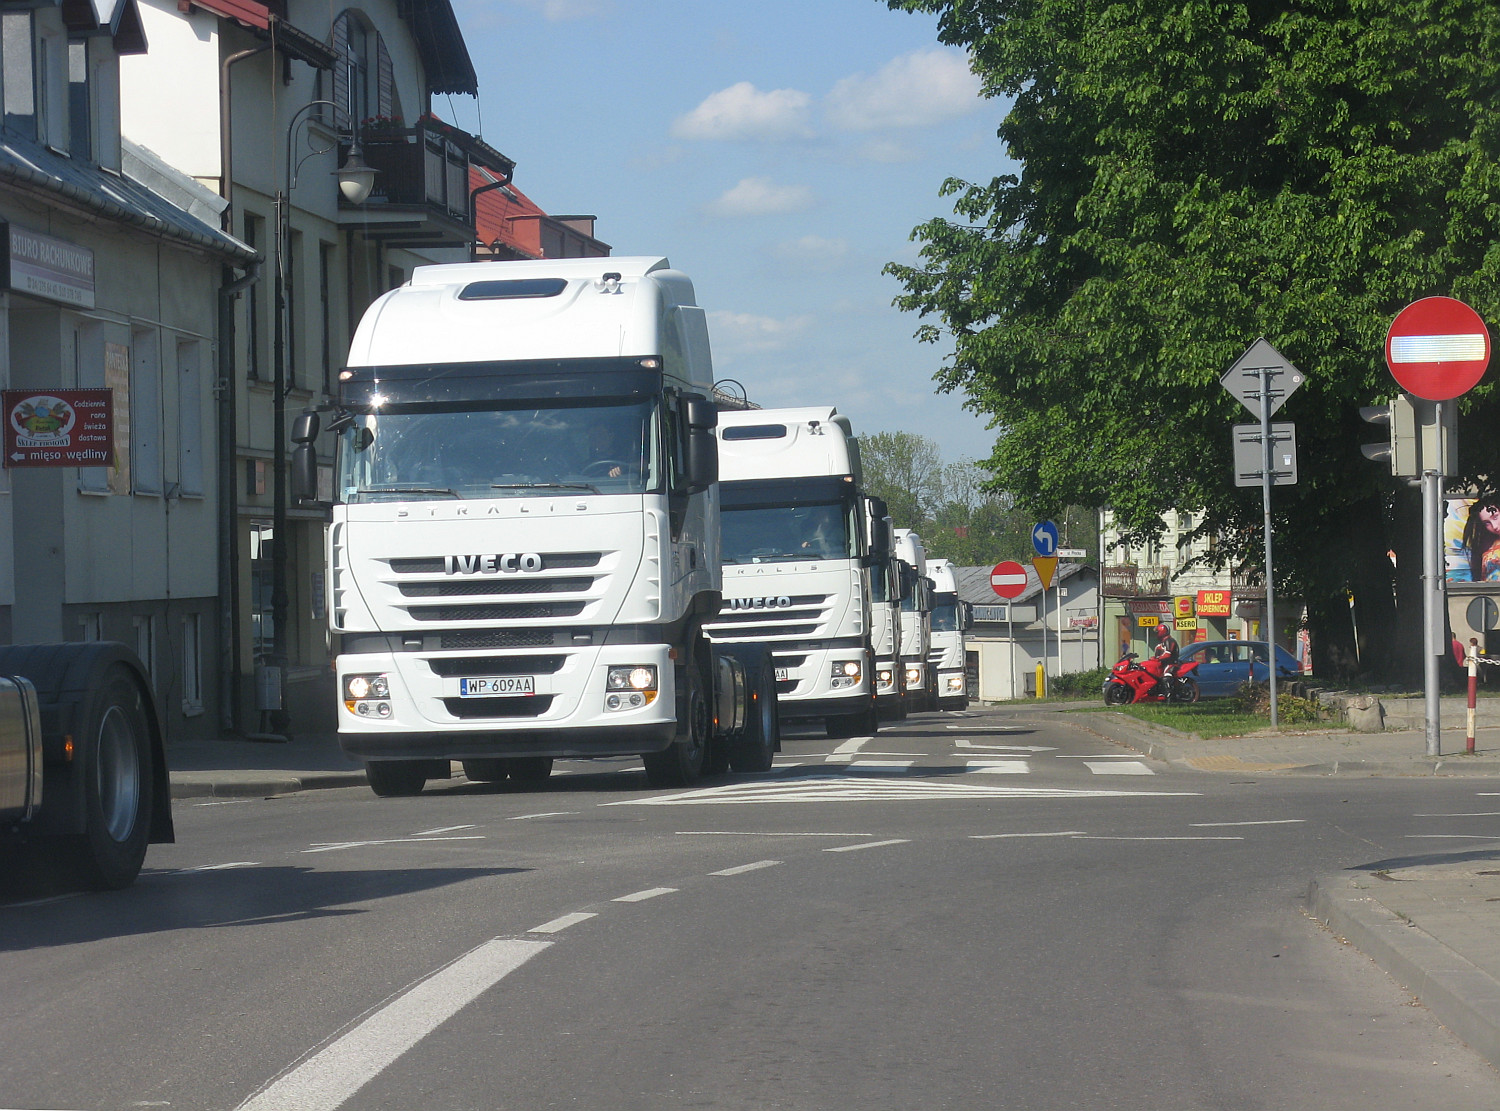 Niezwykły widok na ulicy Piastowskiej - przejazd około 30 jednakowych ciągników siodłowych Iveco. Przejazdowi towarzyszył dźwięk klaksonów :), 19.05.2012 r.